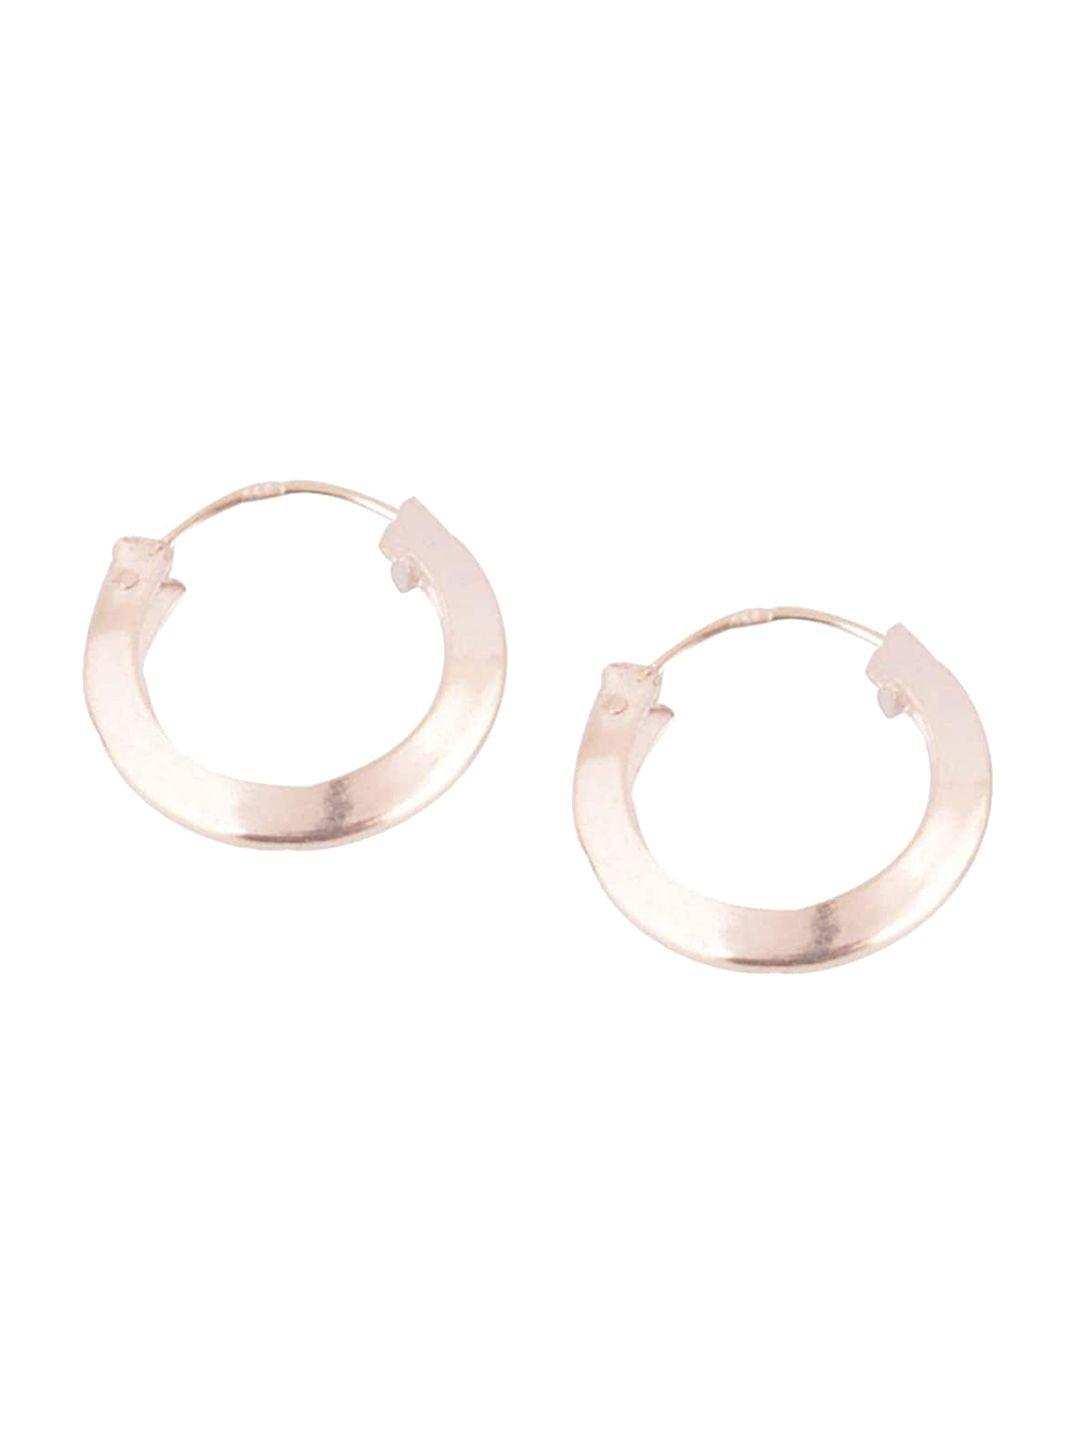 silverwala silver plated hoop earrings